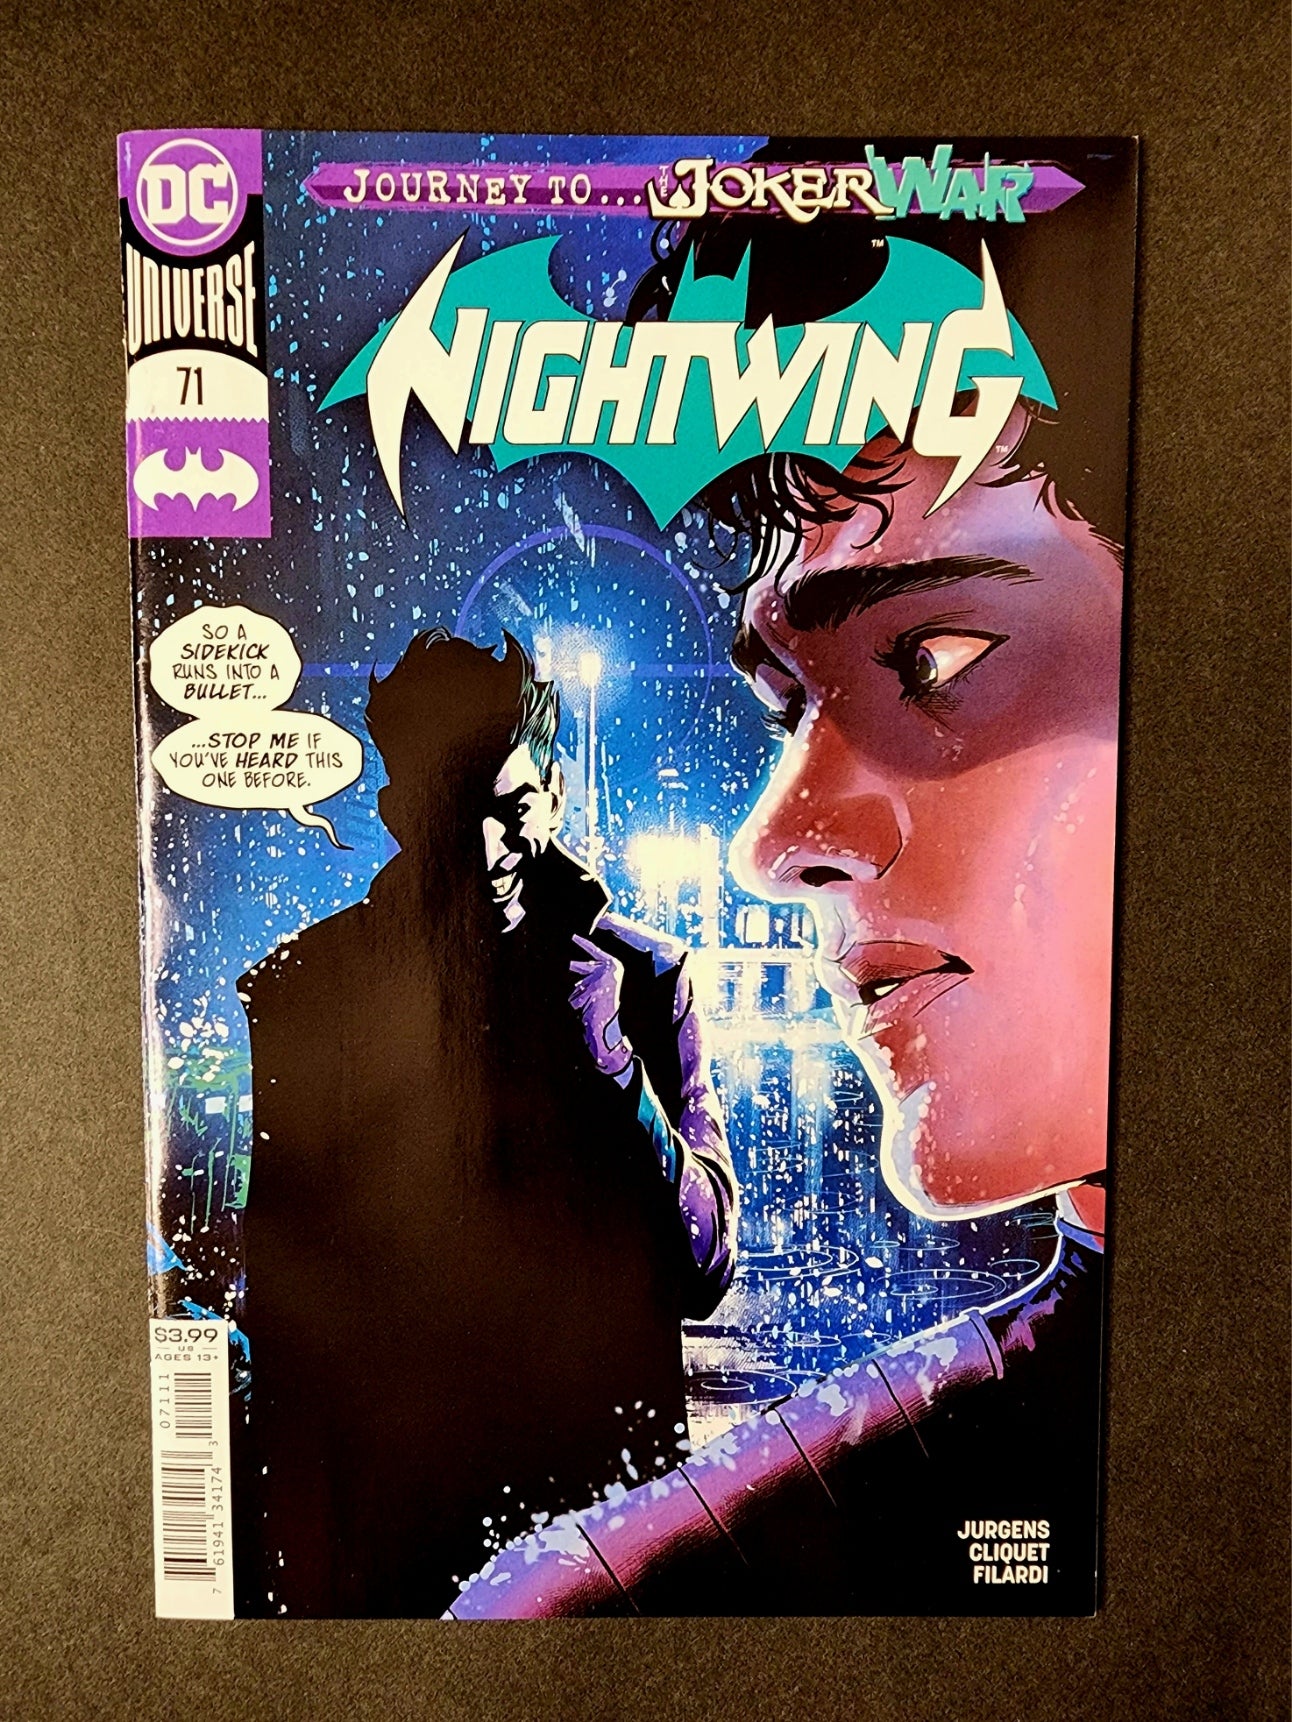 Nightwing (Vol. 4) #71 (VF)